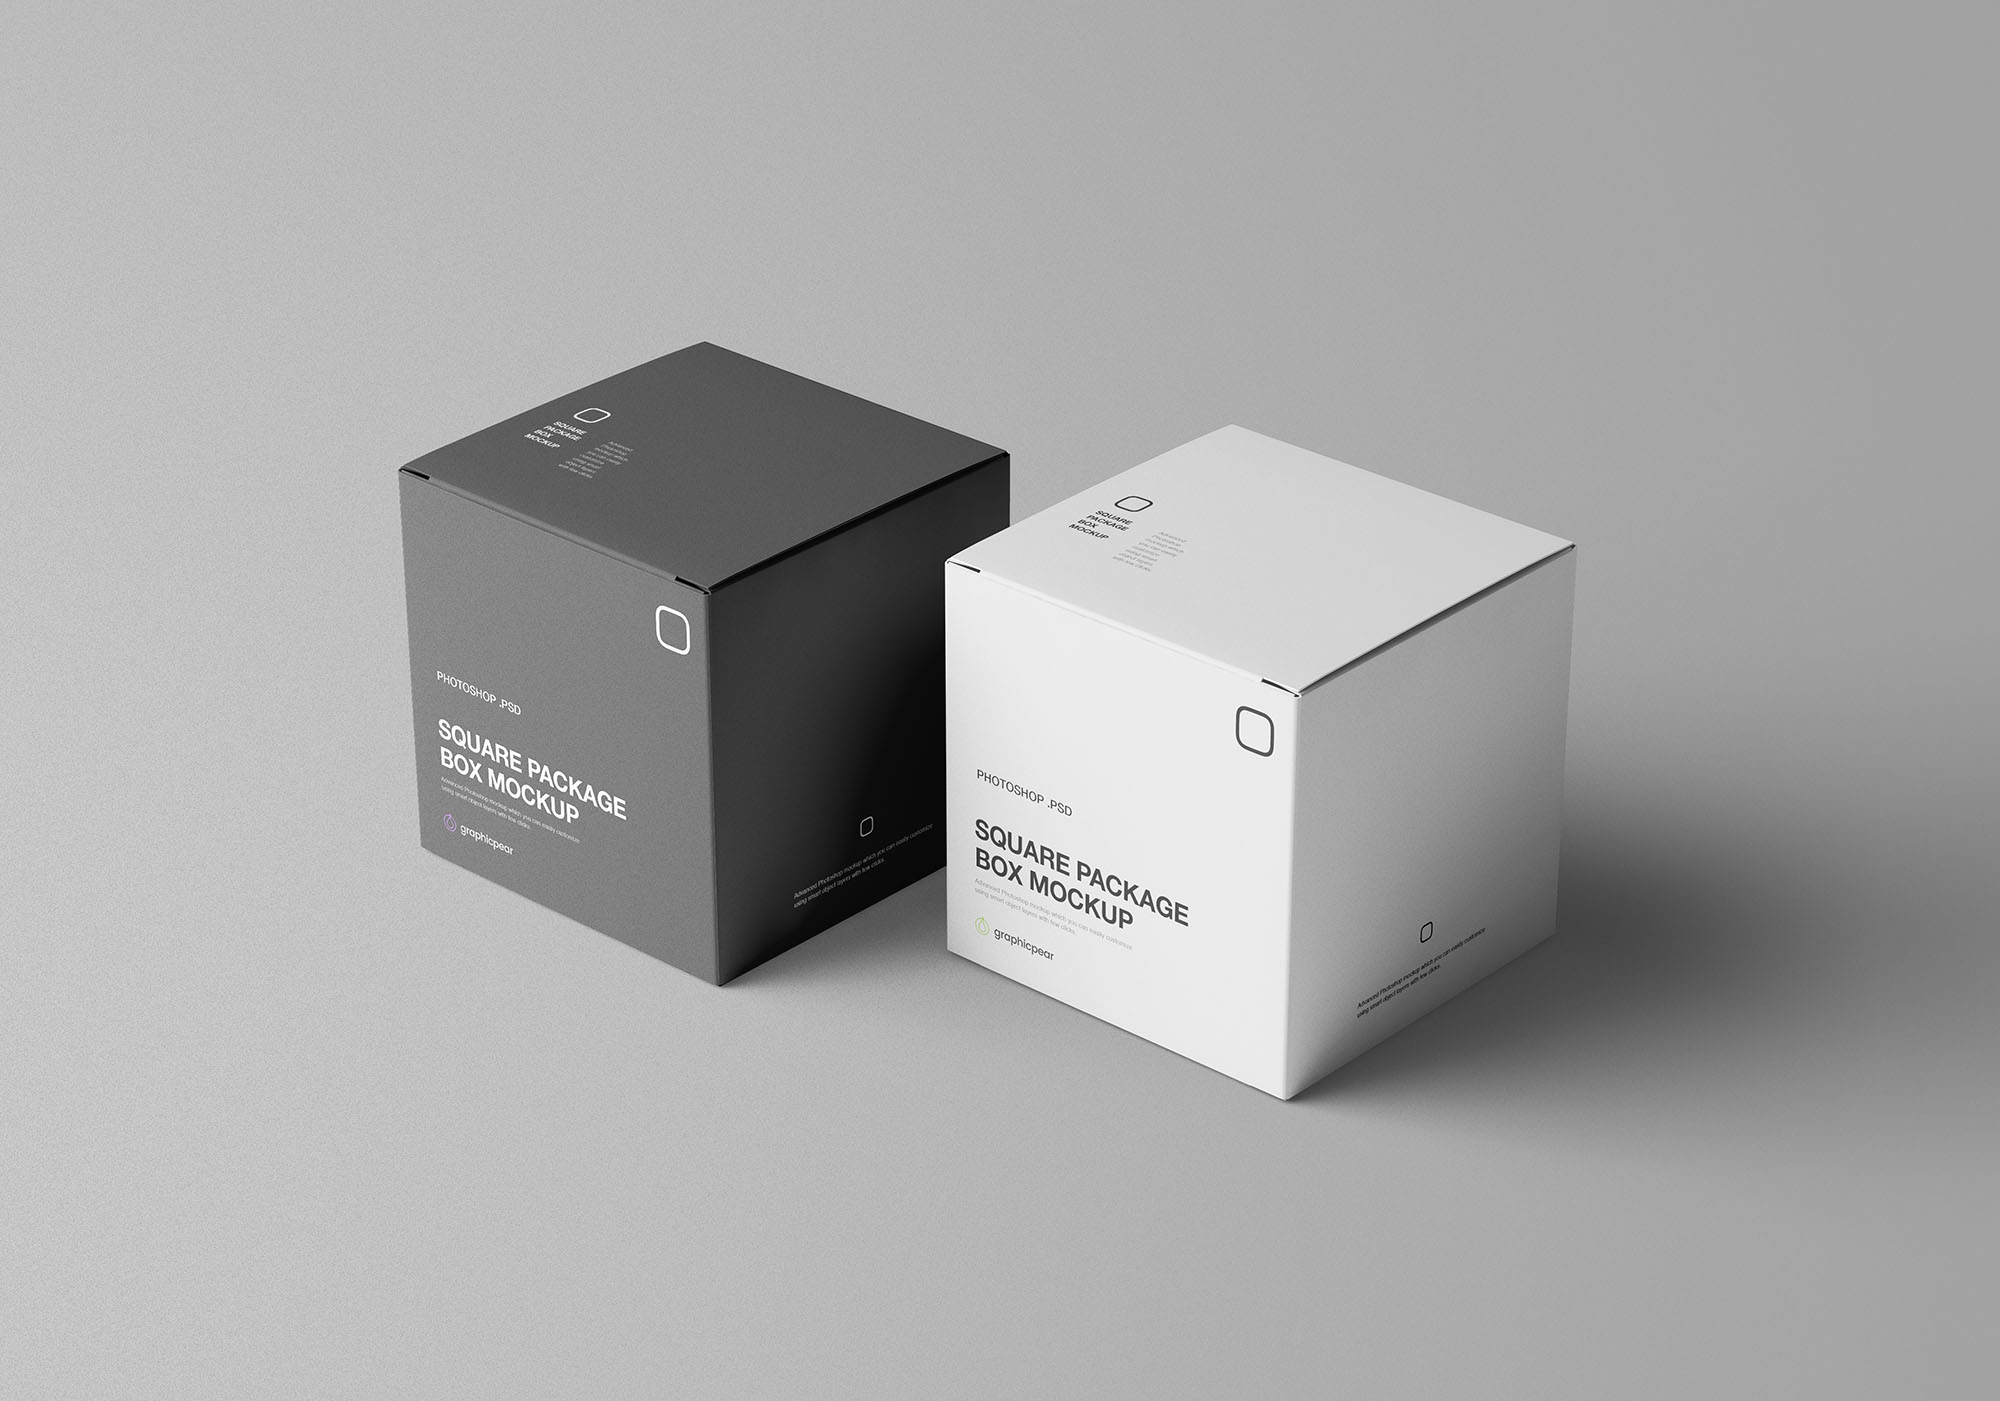 方形包装盒设计效果图样机模板 Square Package Box Mockup插图(3)